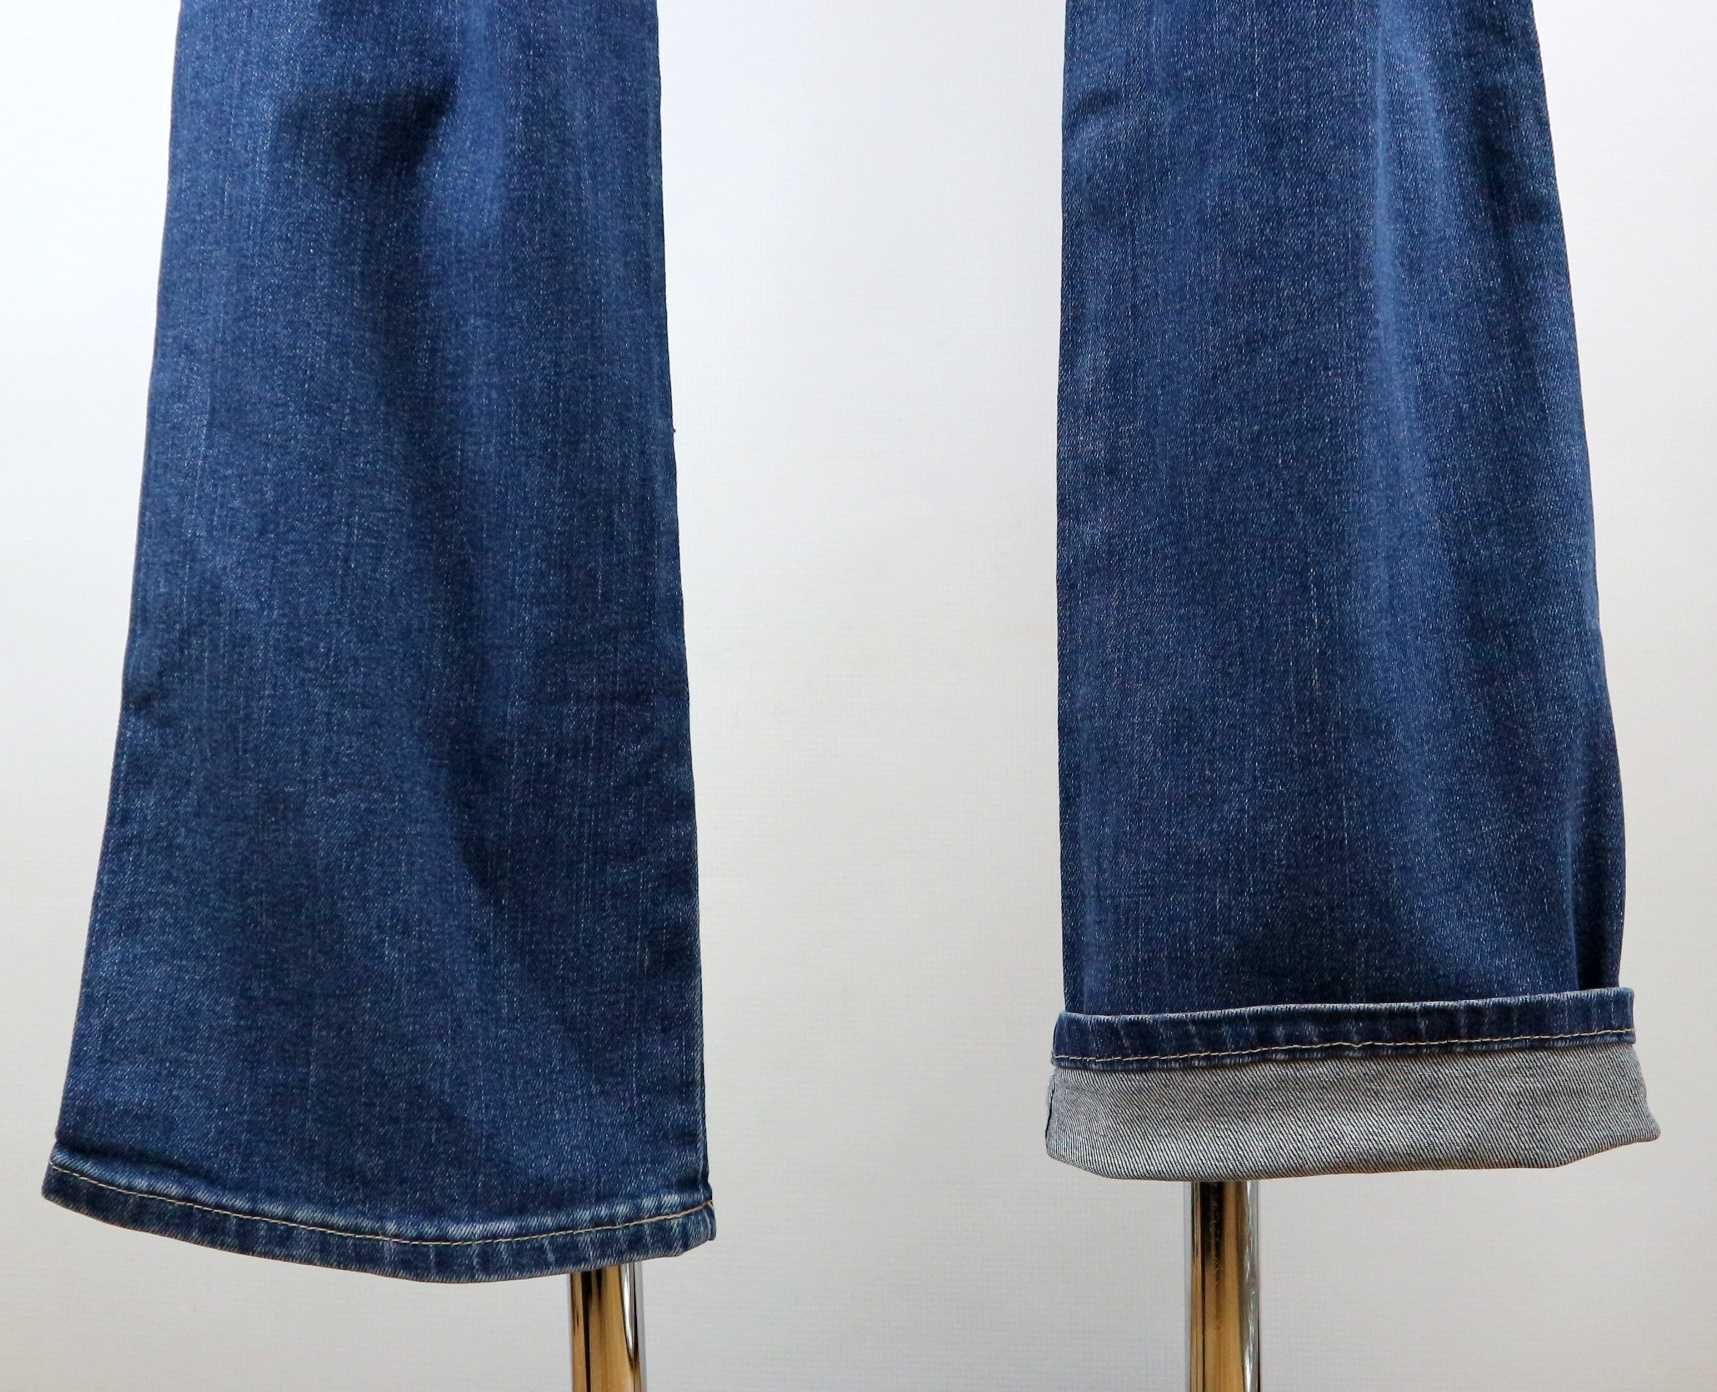 Wrangler Arizona Stretch spodnie jeansy W33 L36 pas 2 x 43 cm